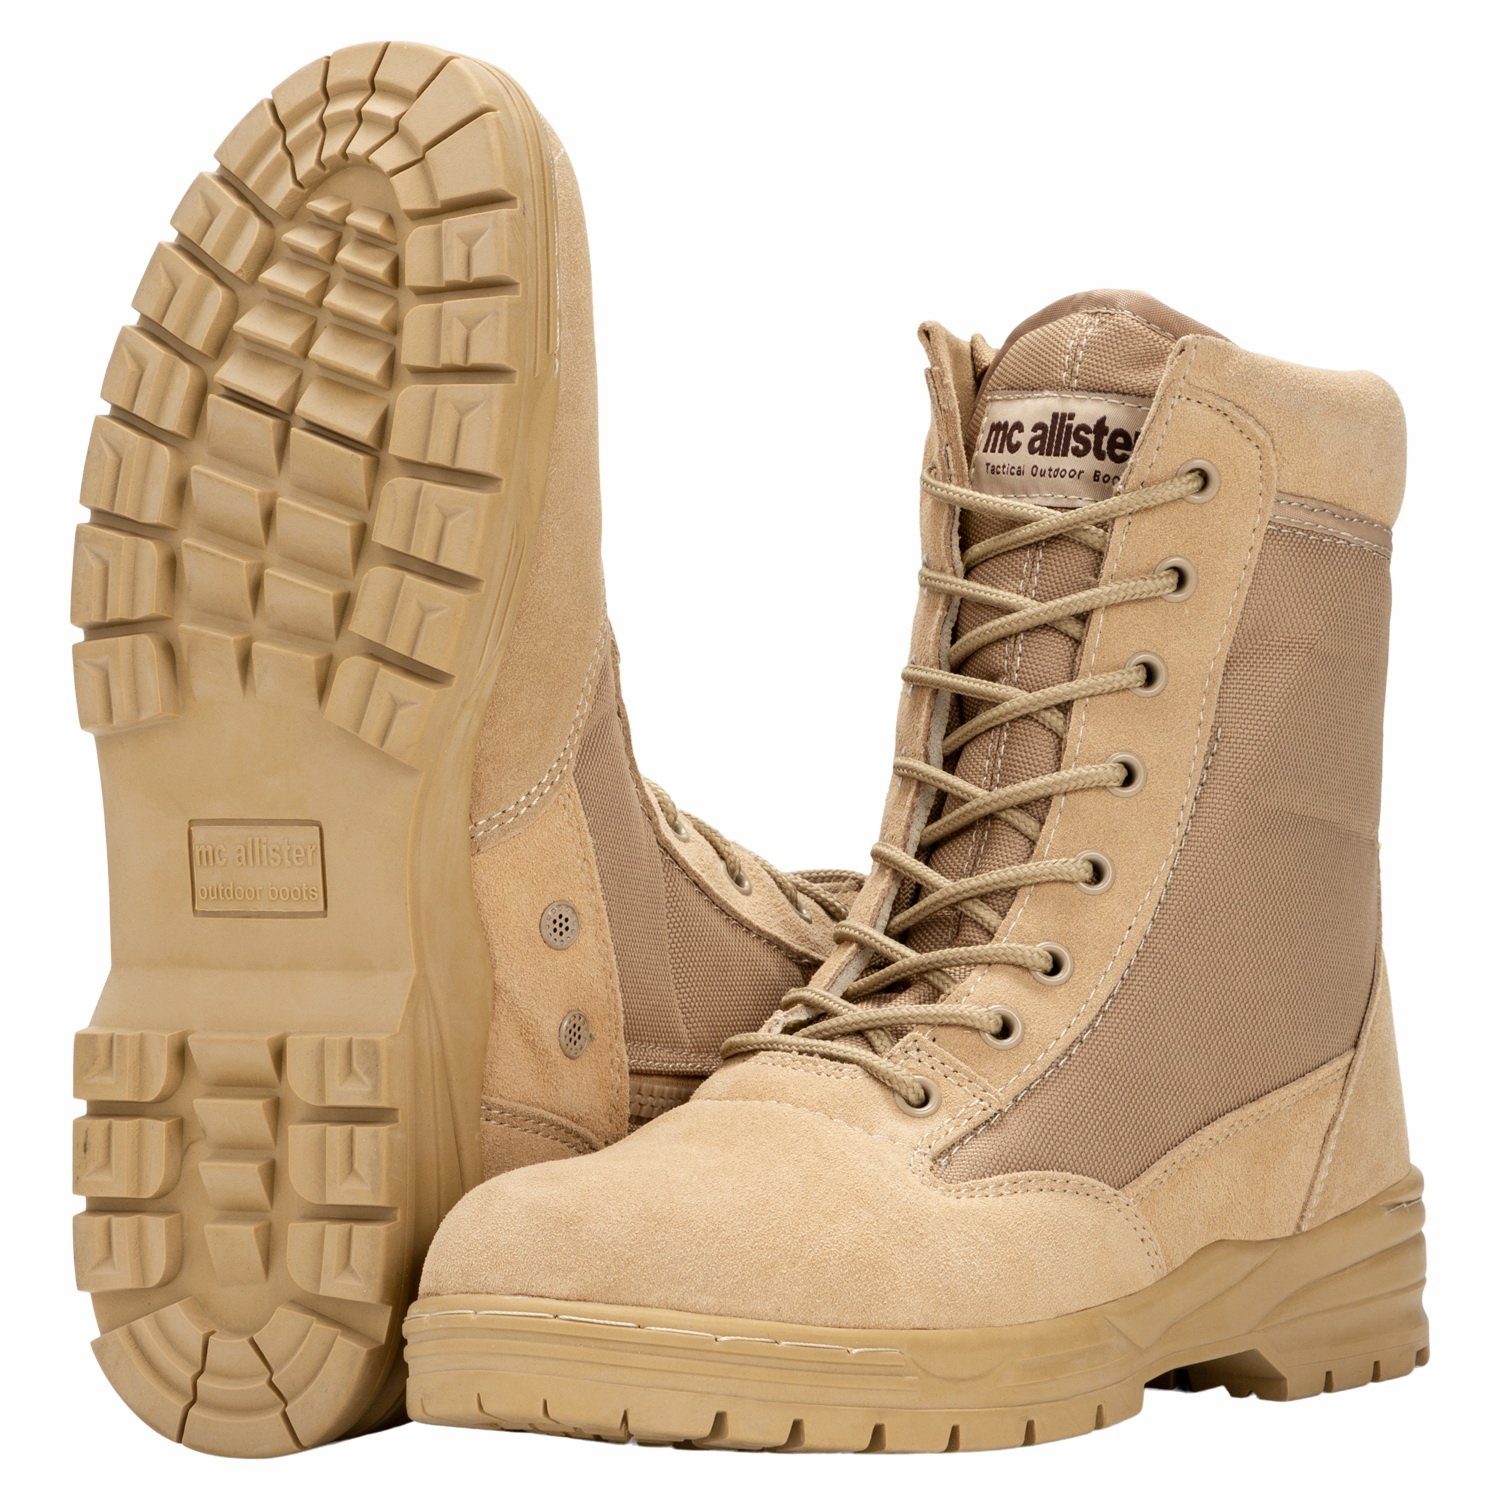 Commando-Industries »Army Patriot Boots Kampfstiefel mit Reißverschluss  khaki« Stiefel online kaufen | OTTO